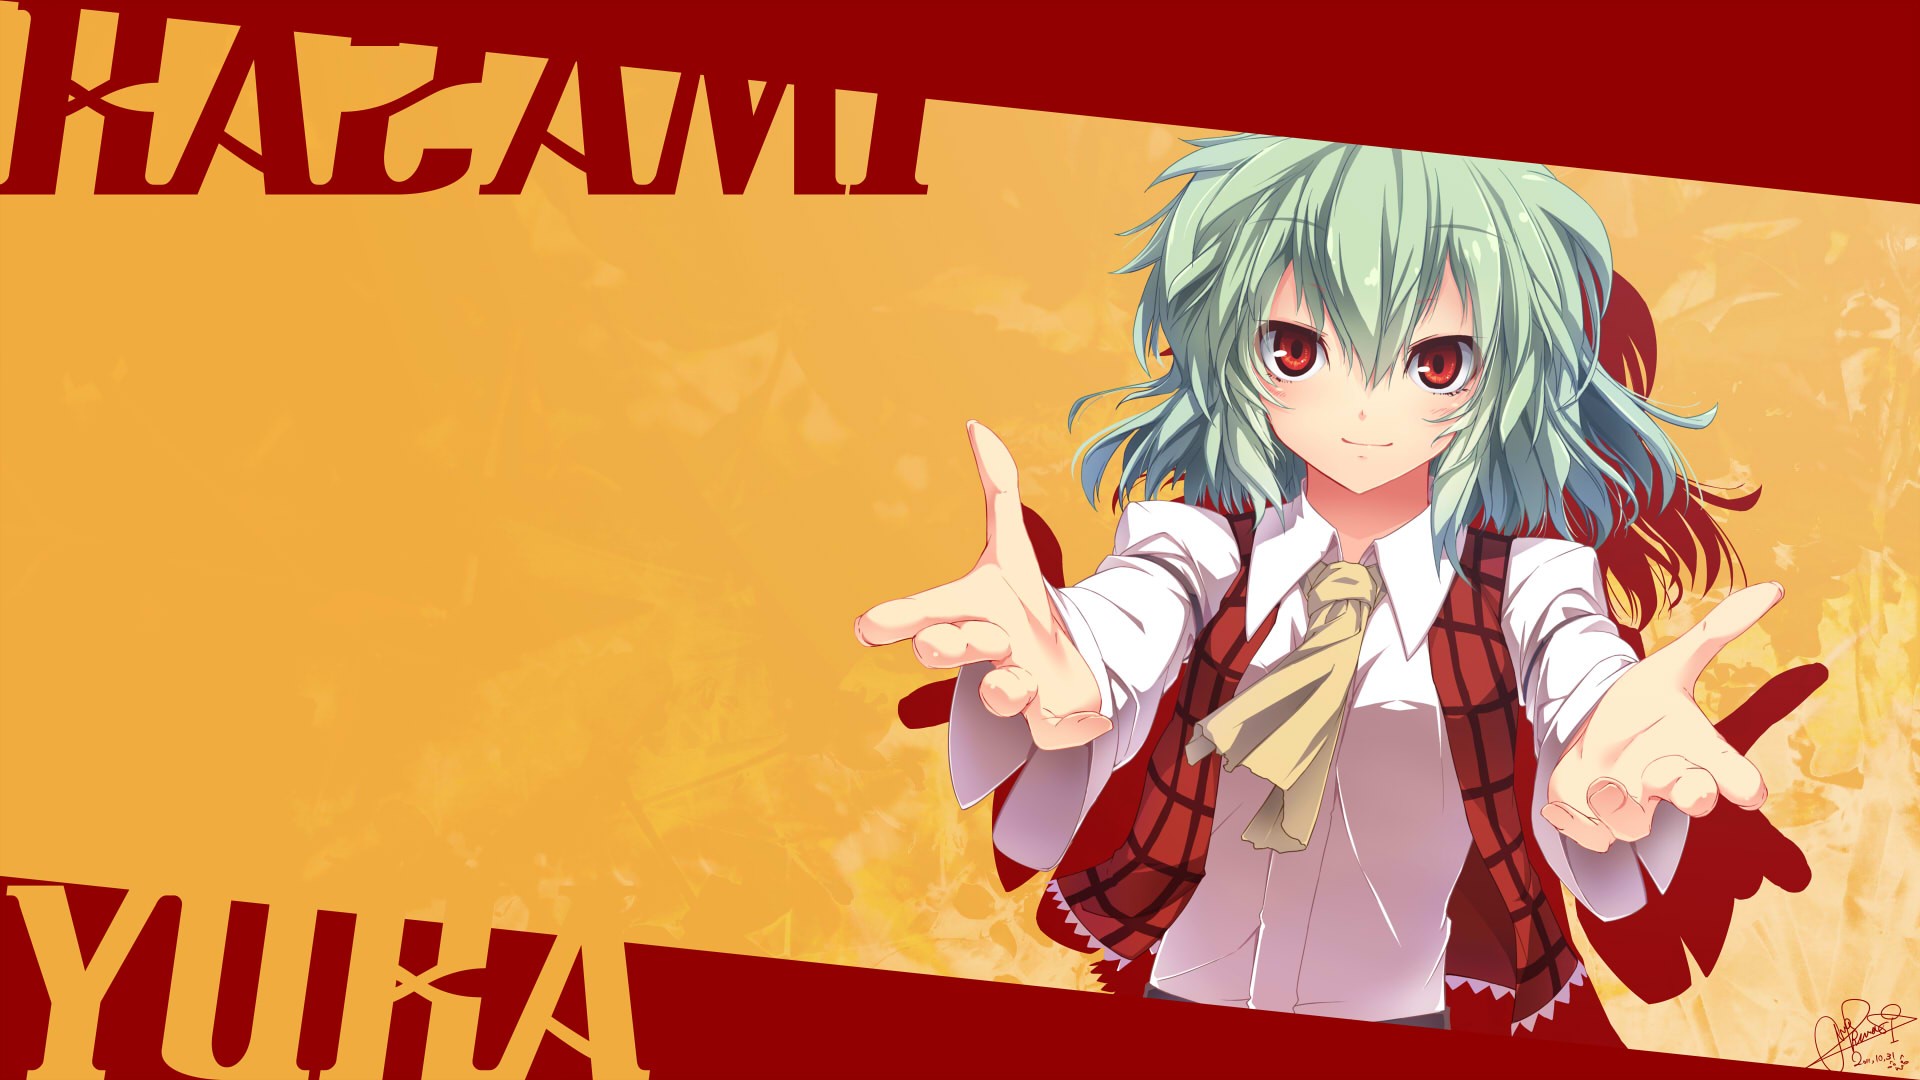 Touhou, red eyes, green hair, smiling, Kazami Yuuka, anime girls - desktop wallpaper